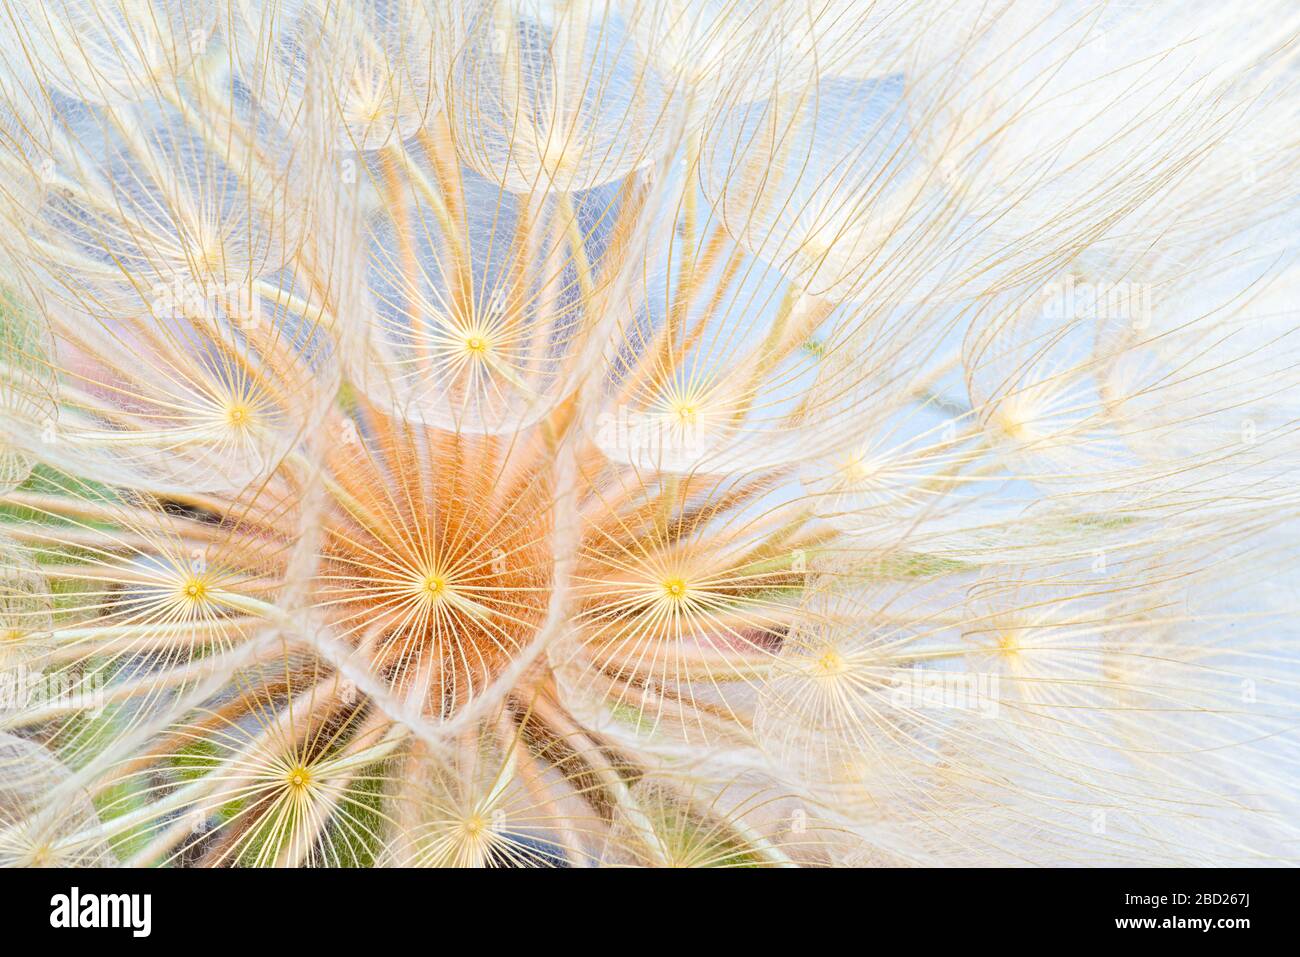 Primer plano de la cabeza gigante de la semilla del diente de león, primavera verano fondo abstracto. Foto de stock